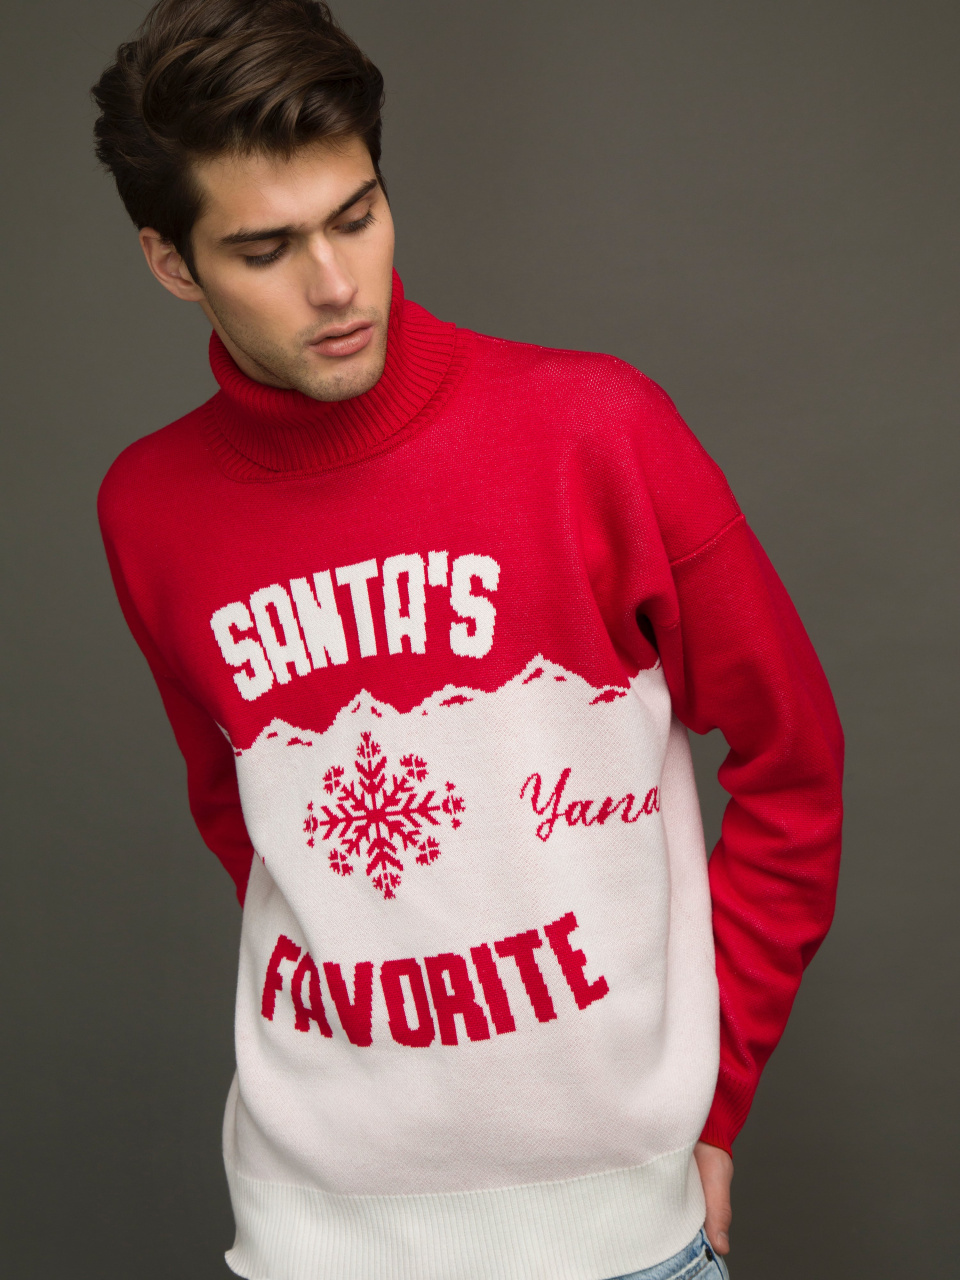 Мужской красно-белый свитер Santa\\\'s Favorite, 1